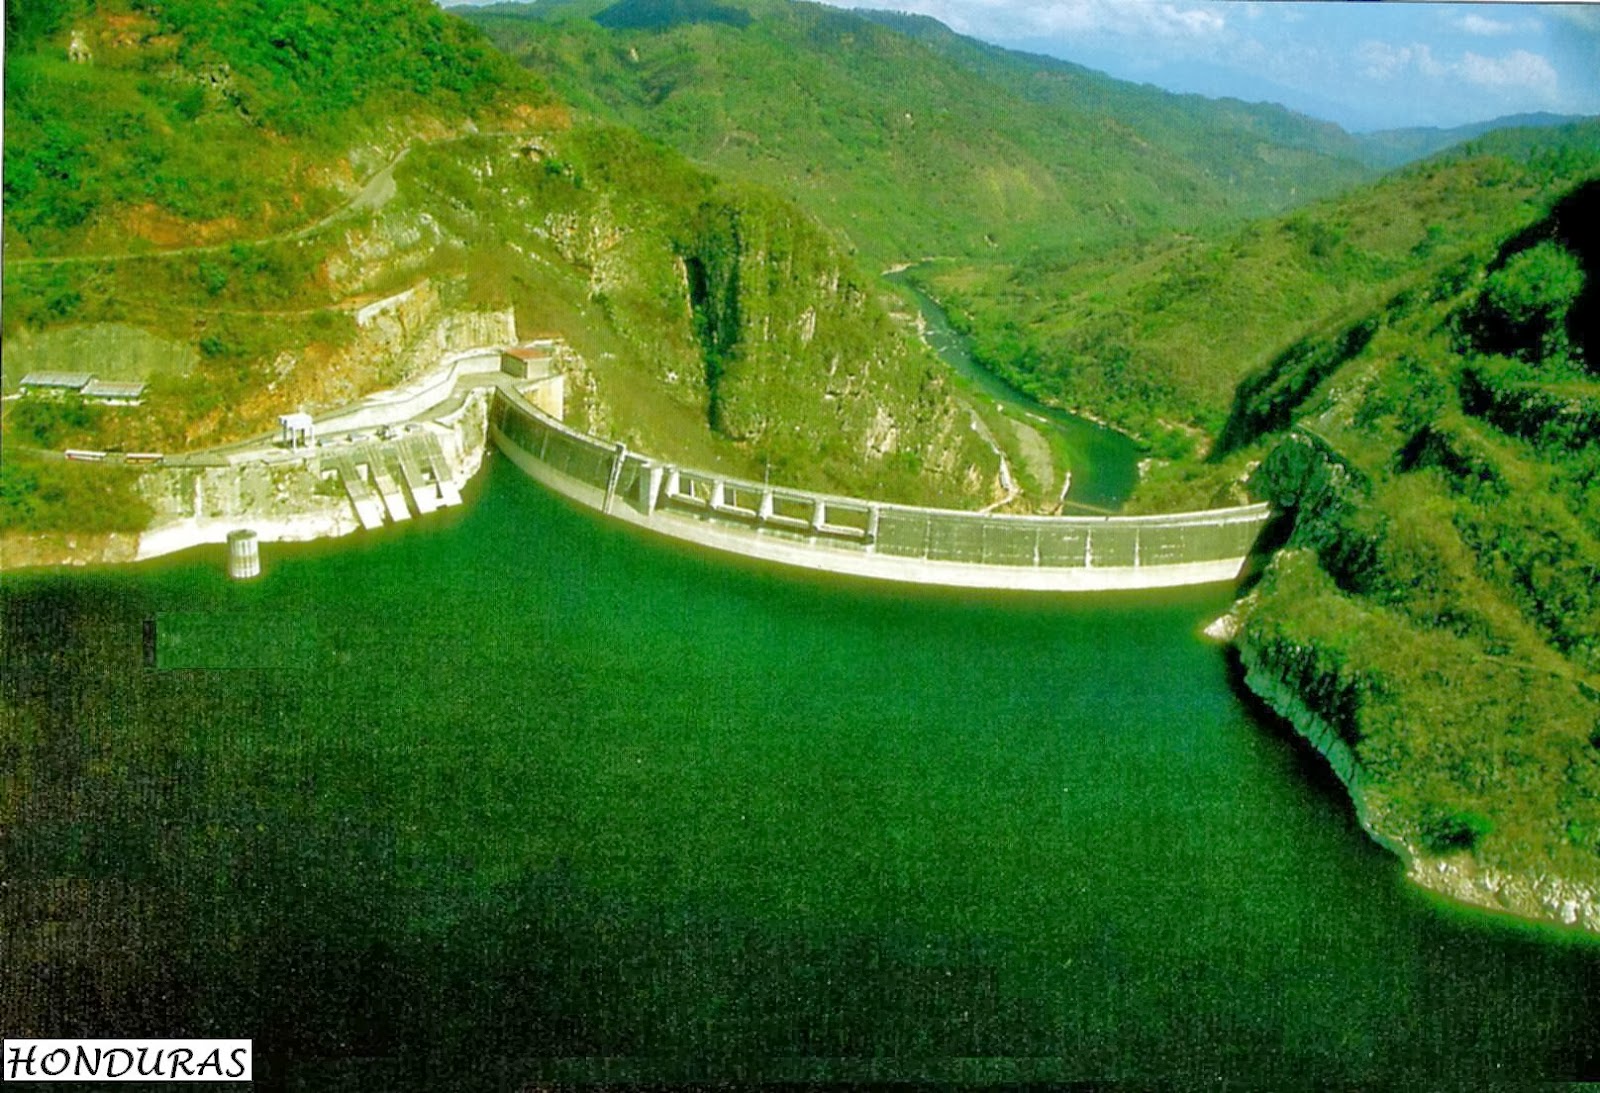 en-positivo-hn-represa-hidroelectrica-el-cajon